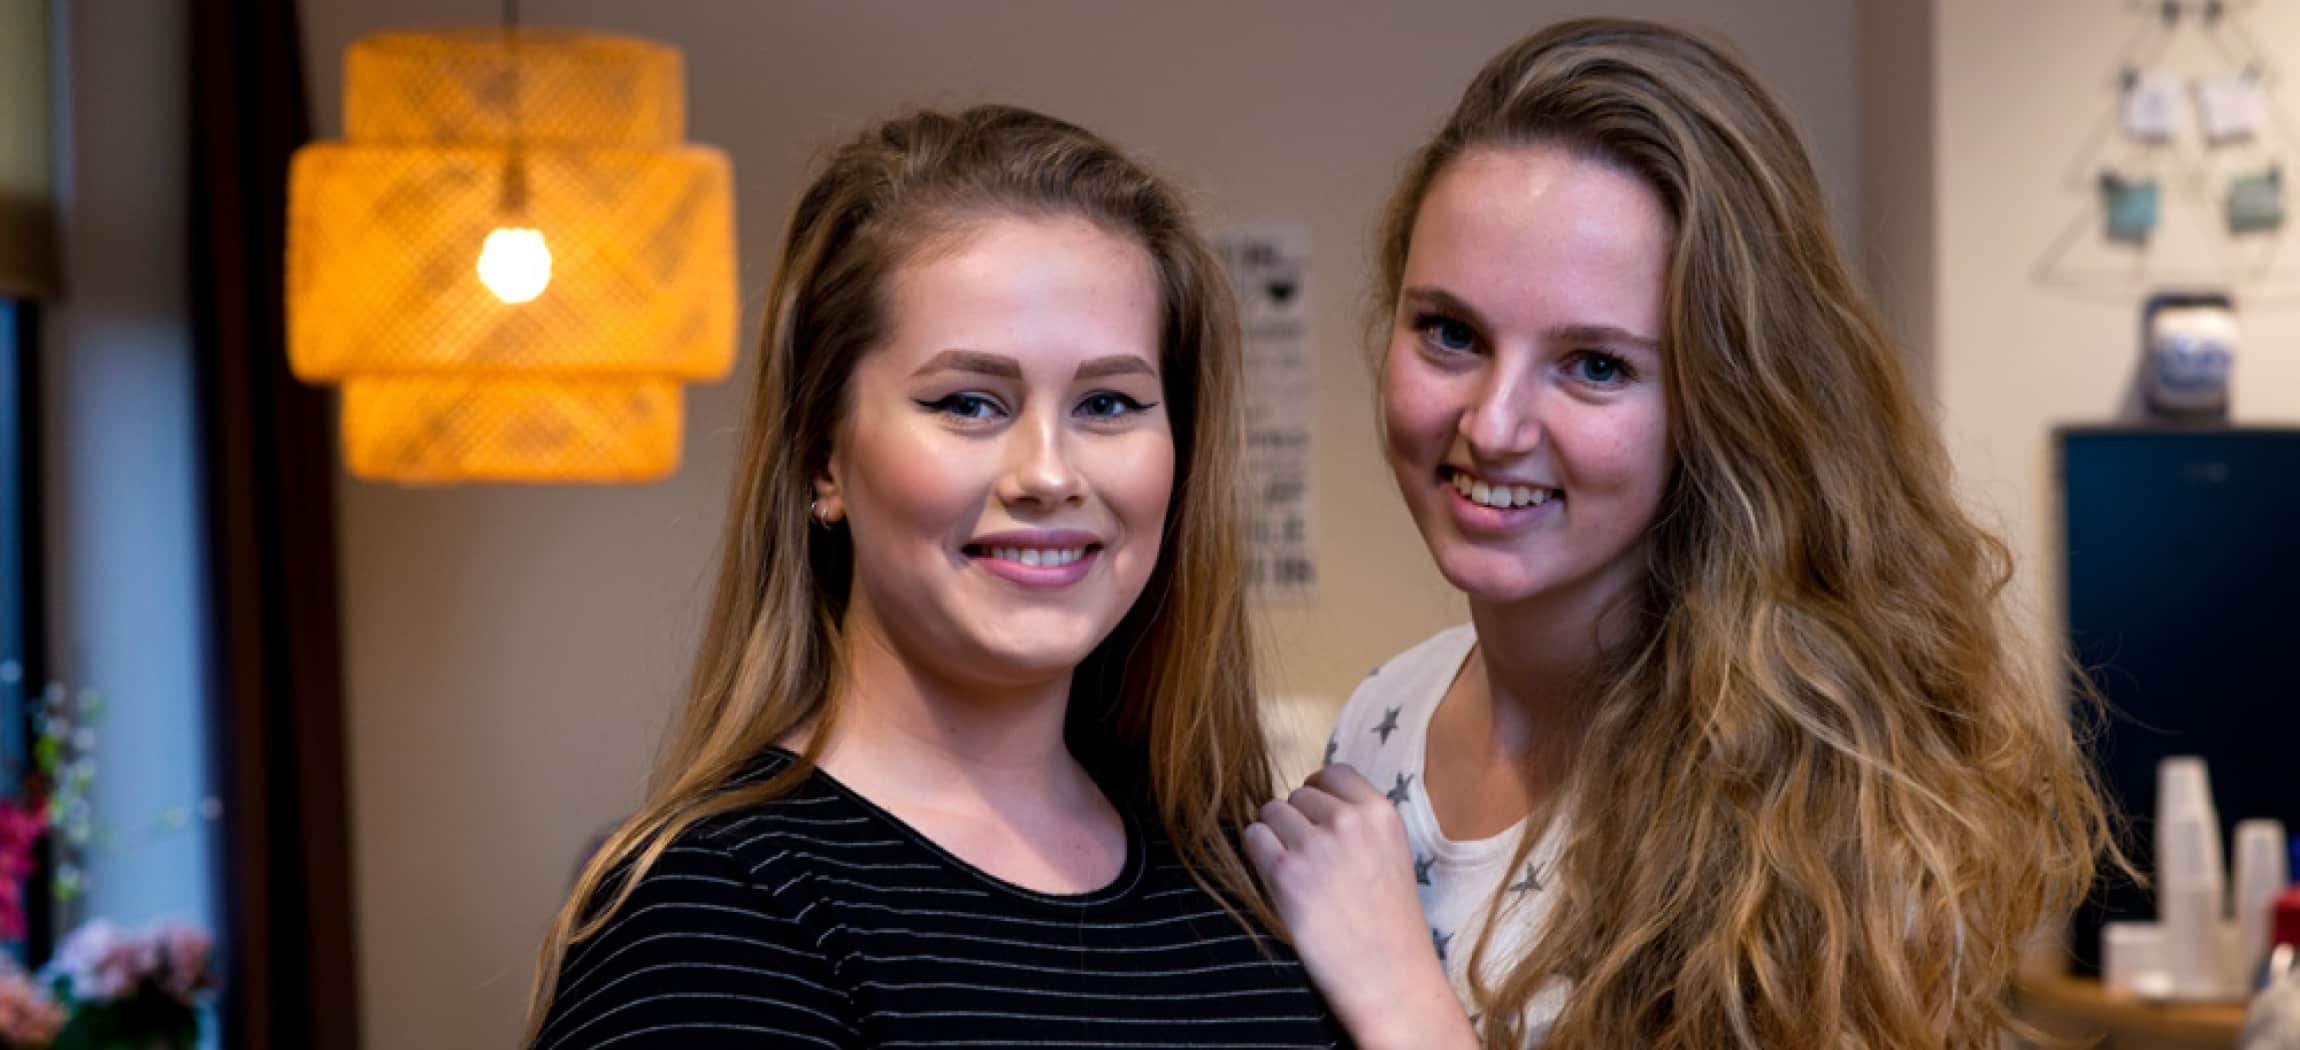 Twee jonge verpleegkundige in opleiding in huiskamer verpleeghuis met gele lamp